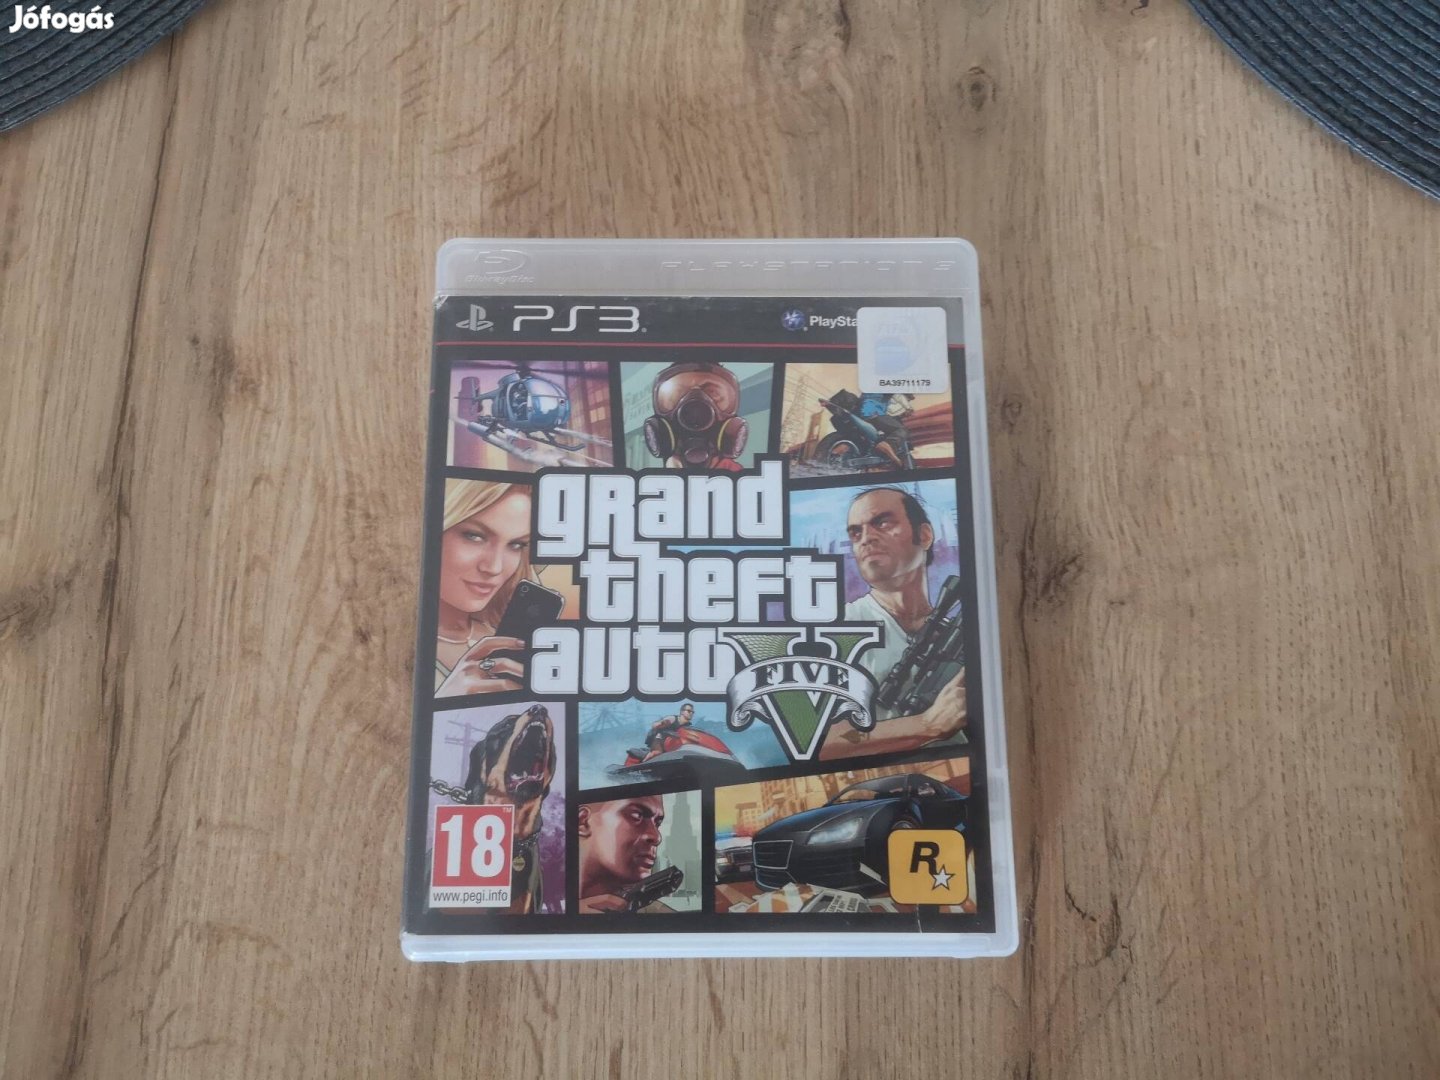 Ps3 Playstation 3 GTA 5 Grand Theft Auto 5 Játéklemez 